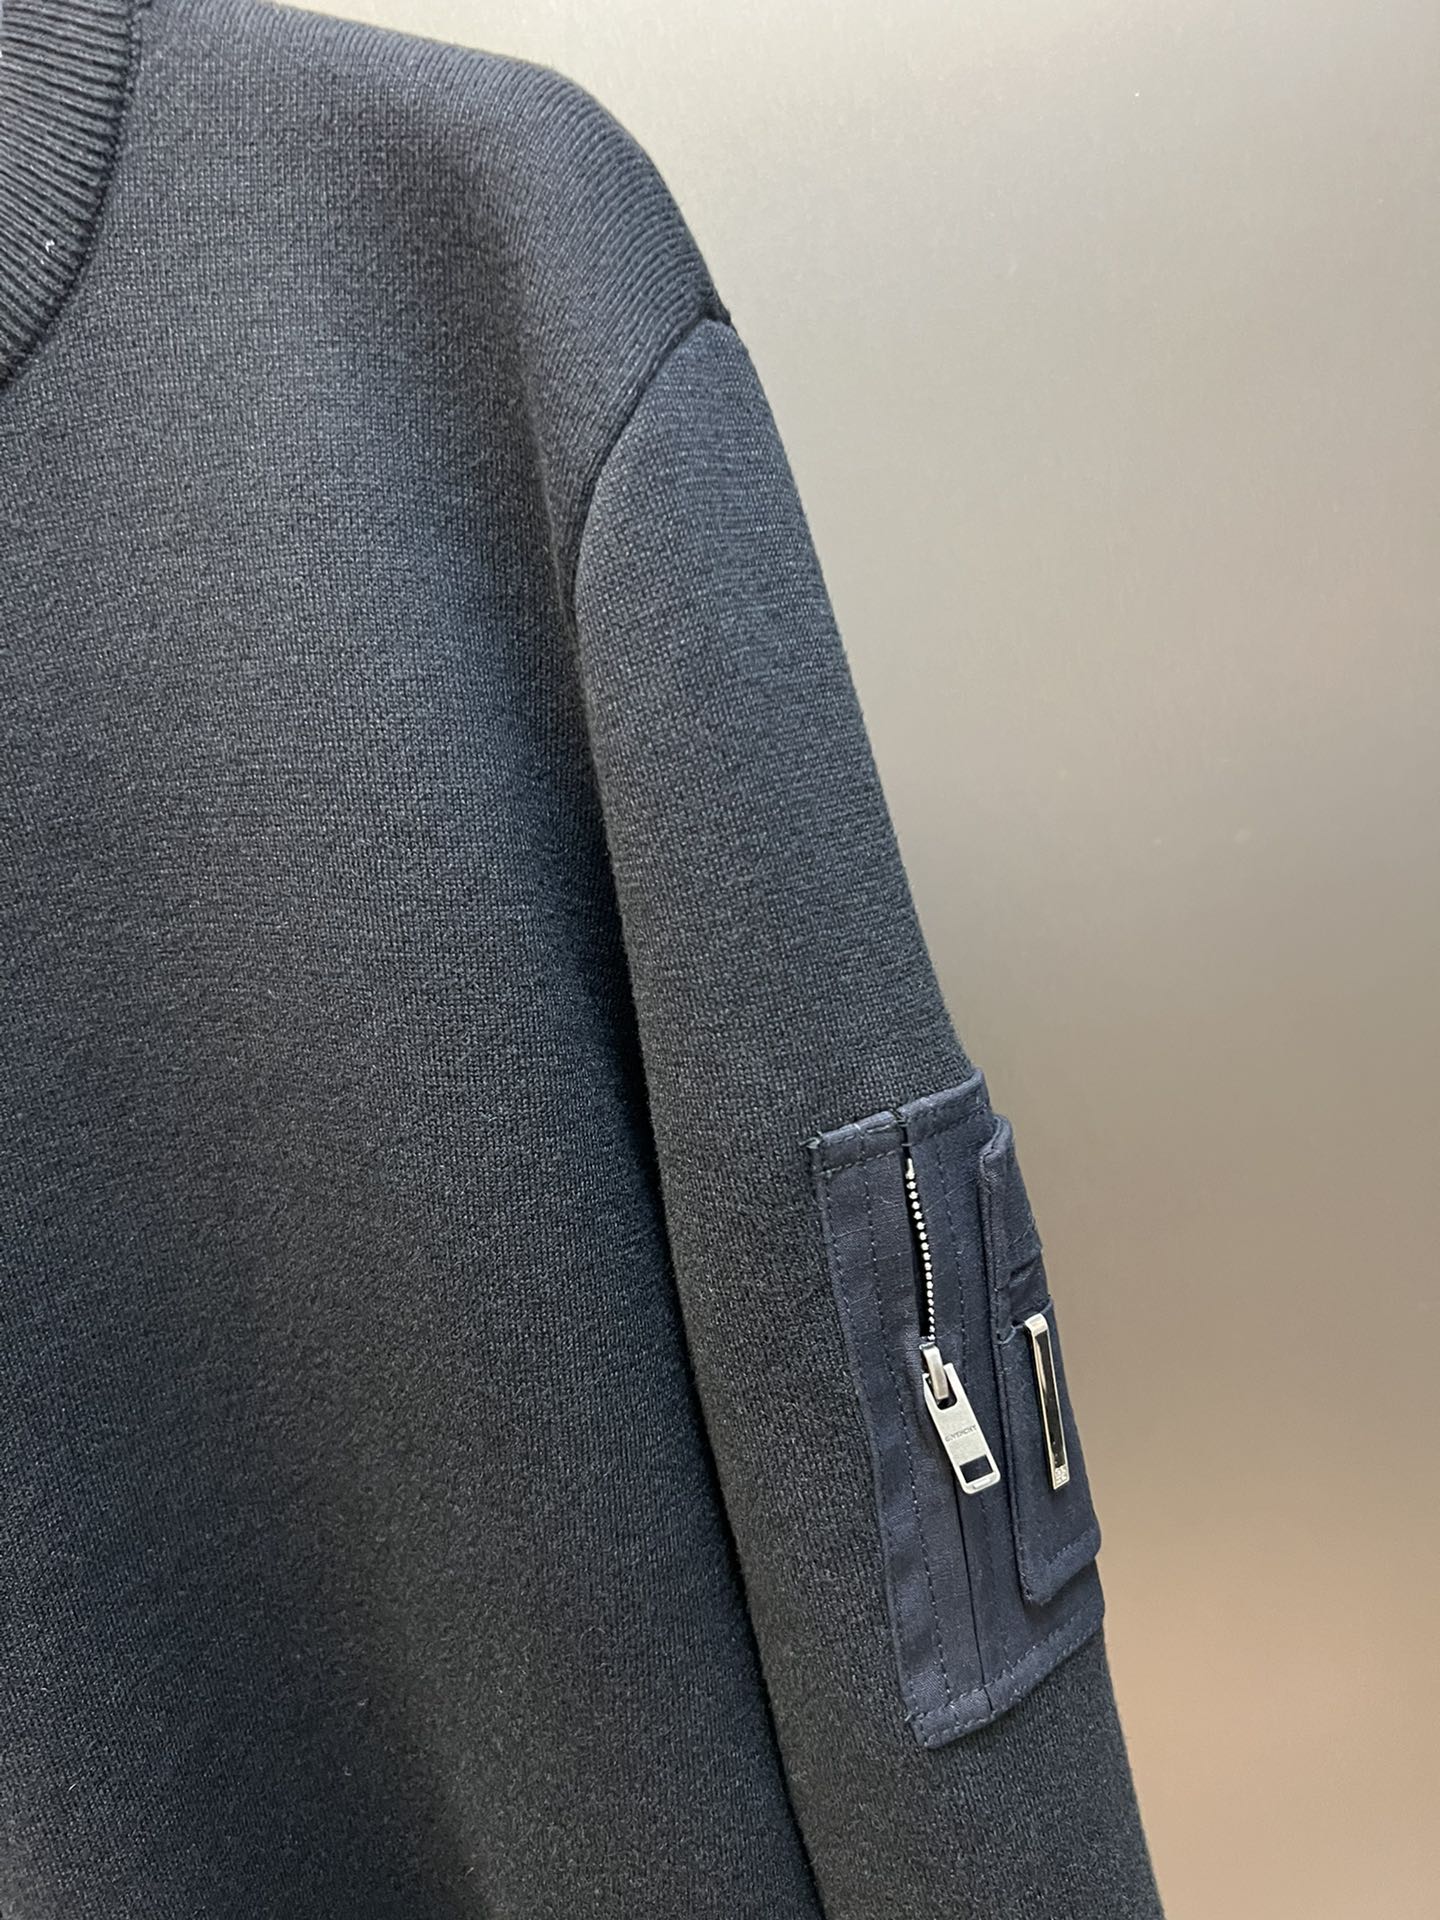 [新季度]ジバンシィ服偽物 冬服 暖かい ウール 厚い ニットトップス セーター シンプル ファッション ブラック_5